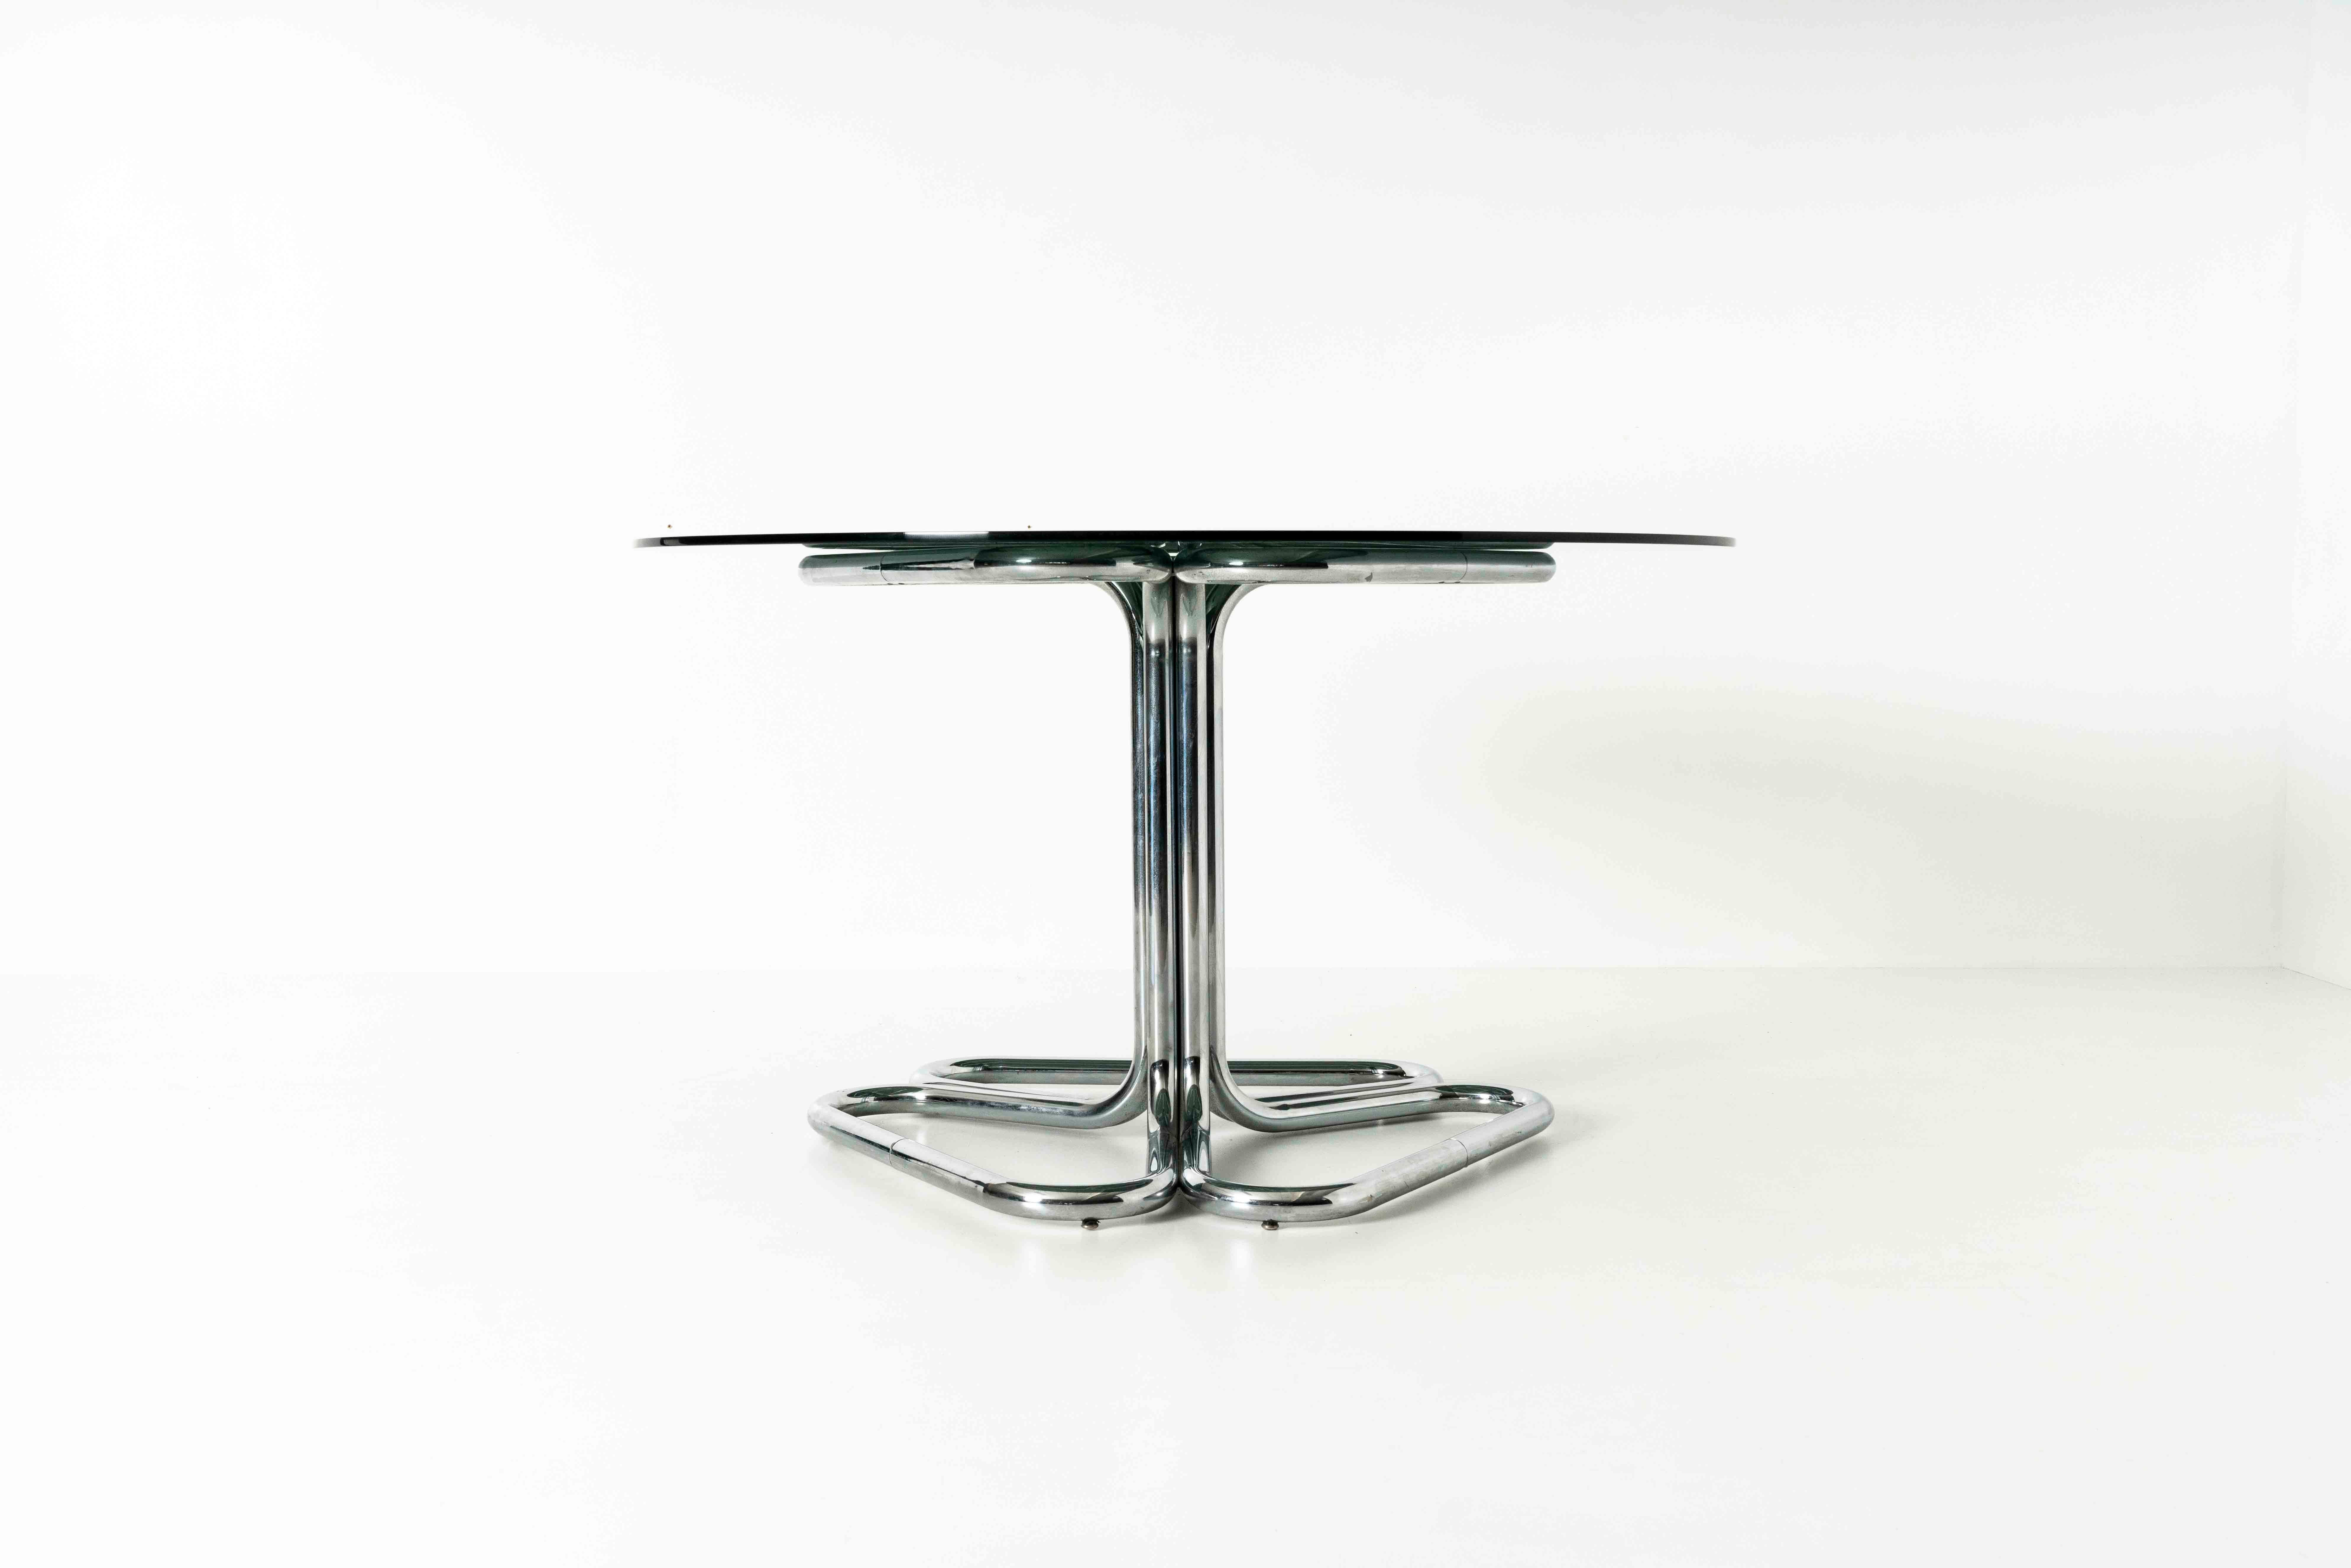 Schöner Esszimmertisch von Giotto Stoppino aus Italien, 1970er Jahre. Dieser Tisch hat ein verchromtes Rohrgestell in attraktiver Dreiecksform mit einer Platte aus Rauchglas. Wir haben auch ein passendes Giotto Stoppino Esszimmerstuhlset im Angebot.